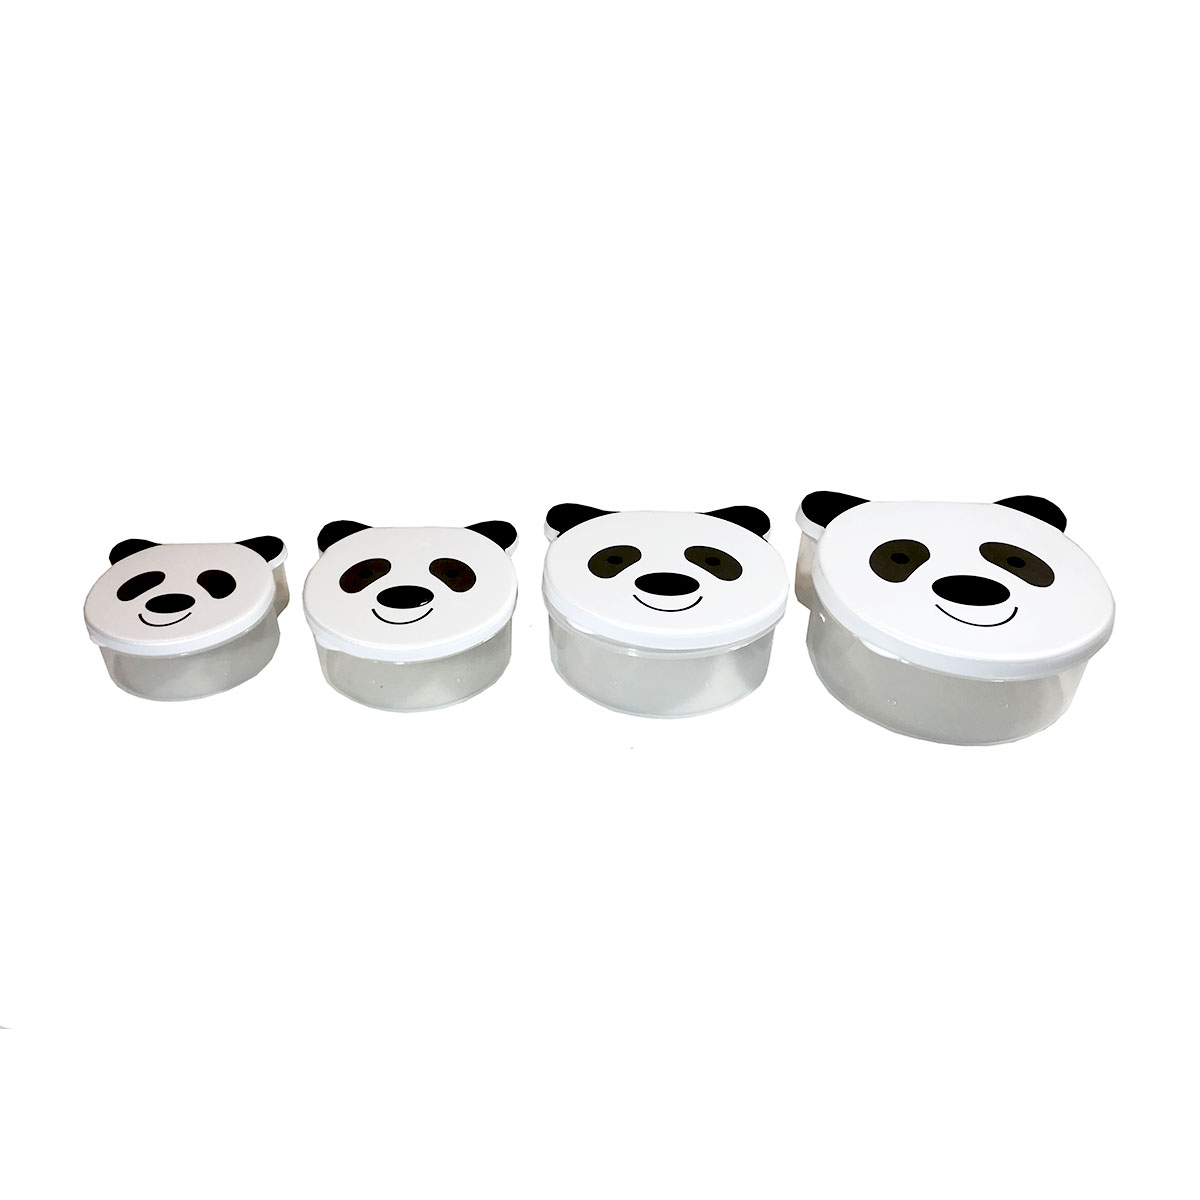 ظرف نگهدارنده مدل panda-4 مجموعه 4 عددی